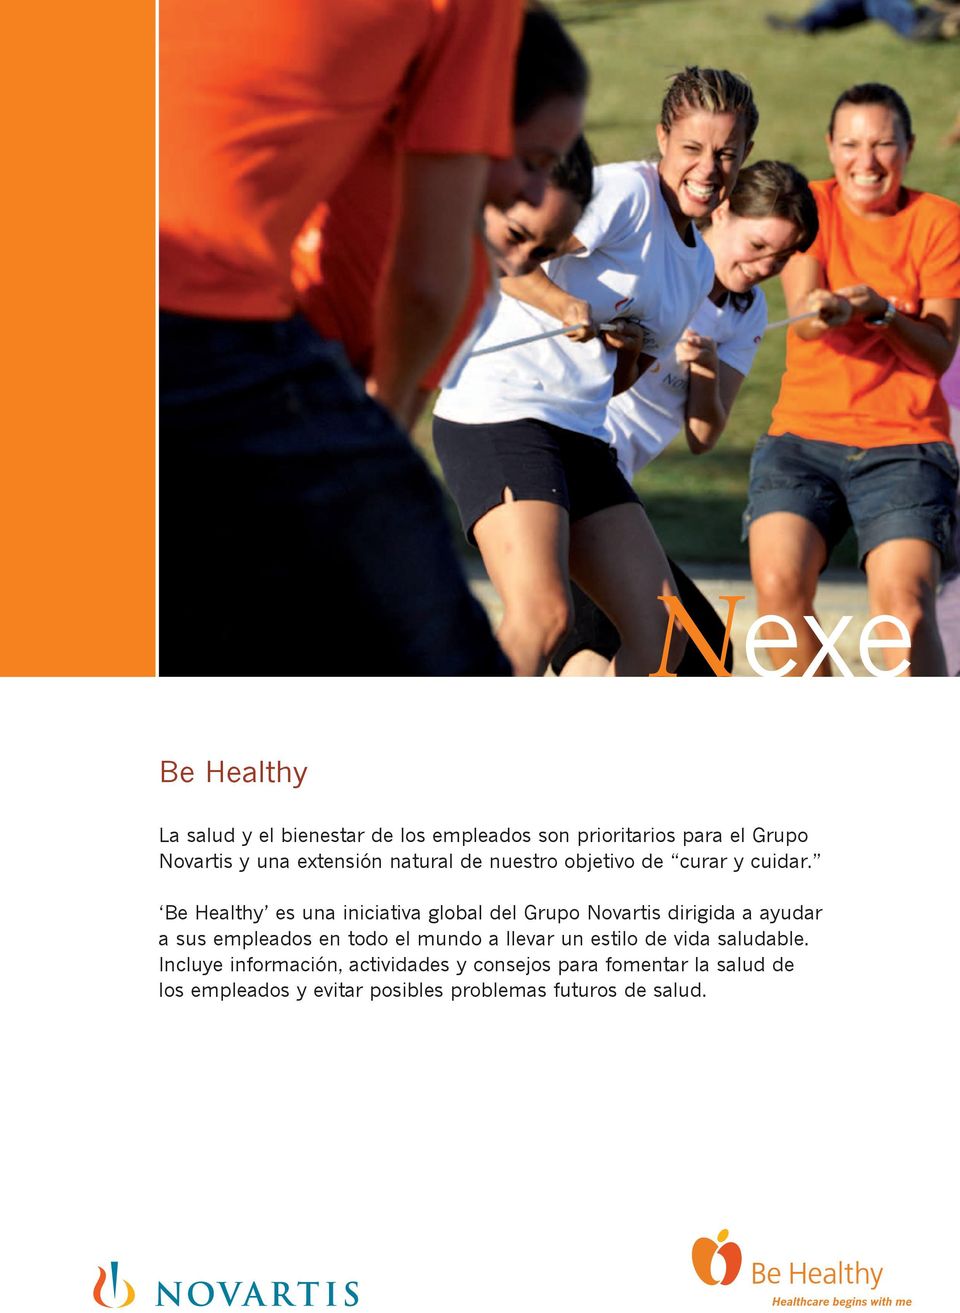 Be Healthy es una iniciativa global del Grupo Novartis dirigida a ayudar a sus empleados en todo el mundo a